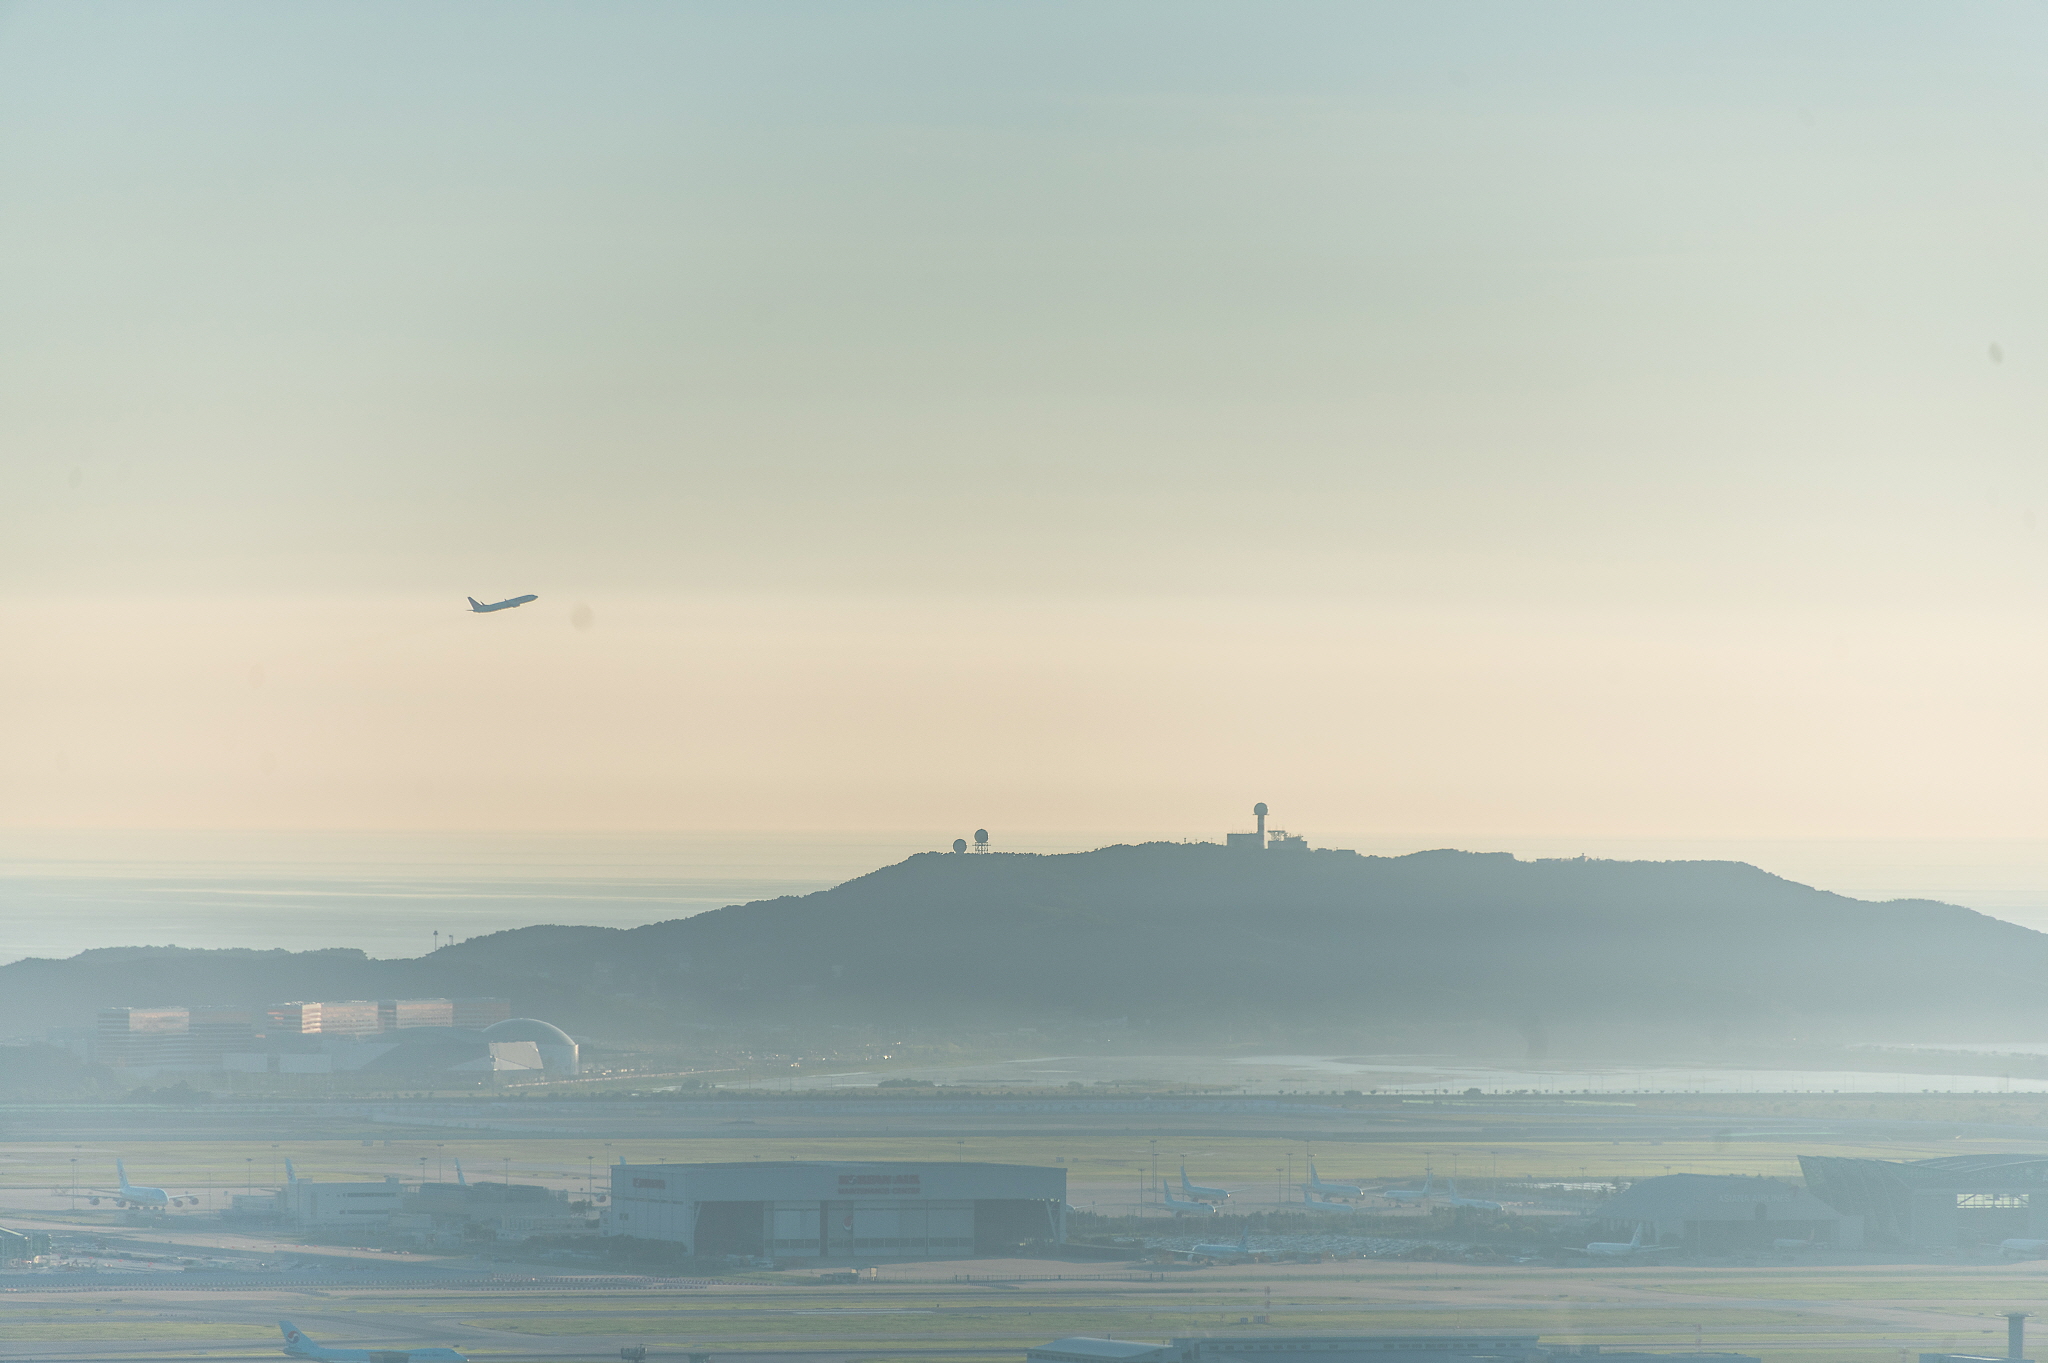 인천공항을 출발해 이륙하는 비행기의 모습입니다.